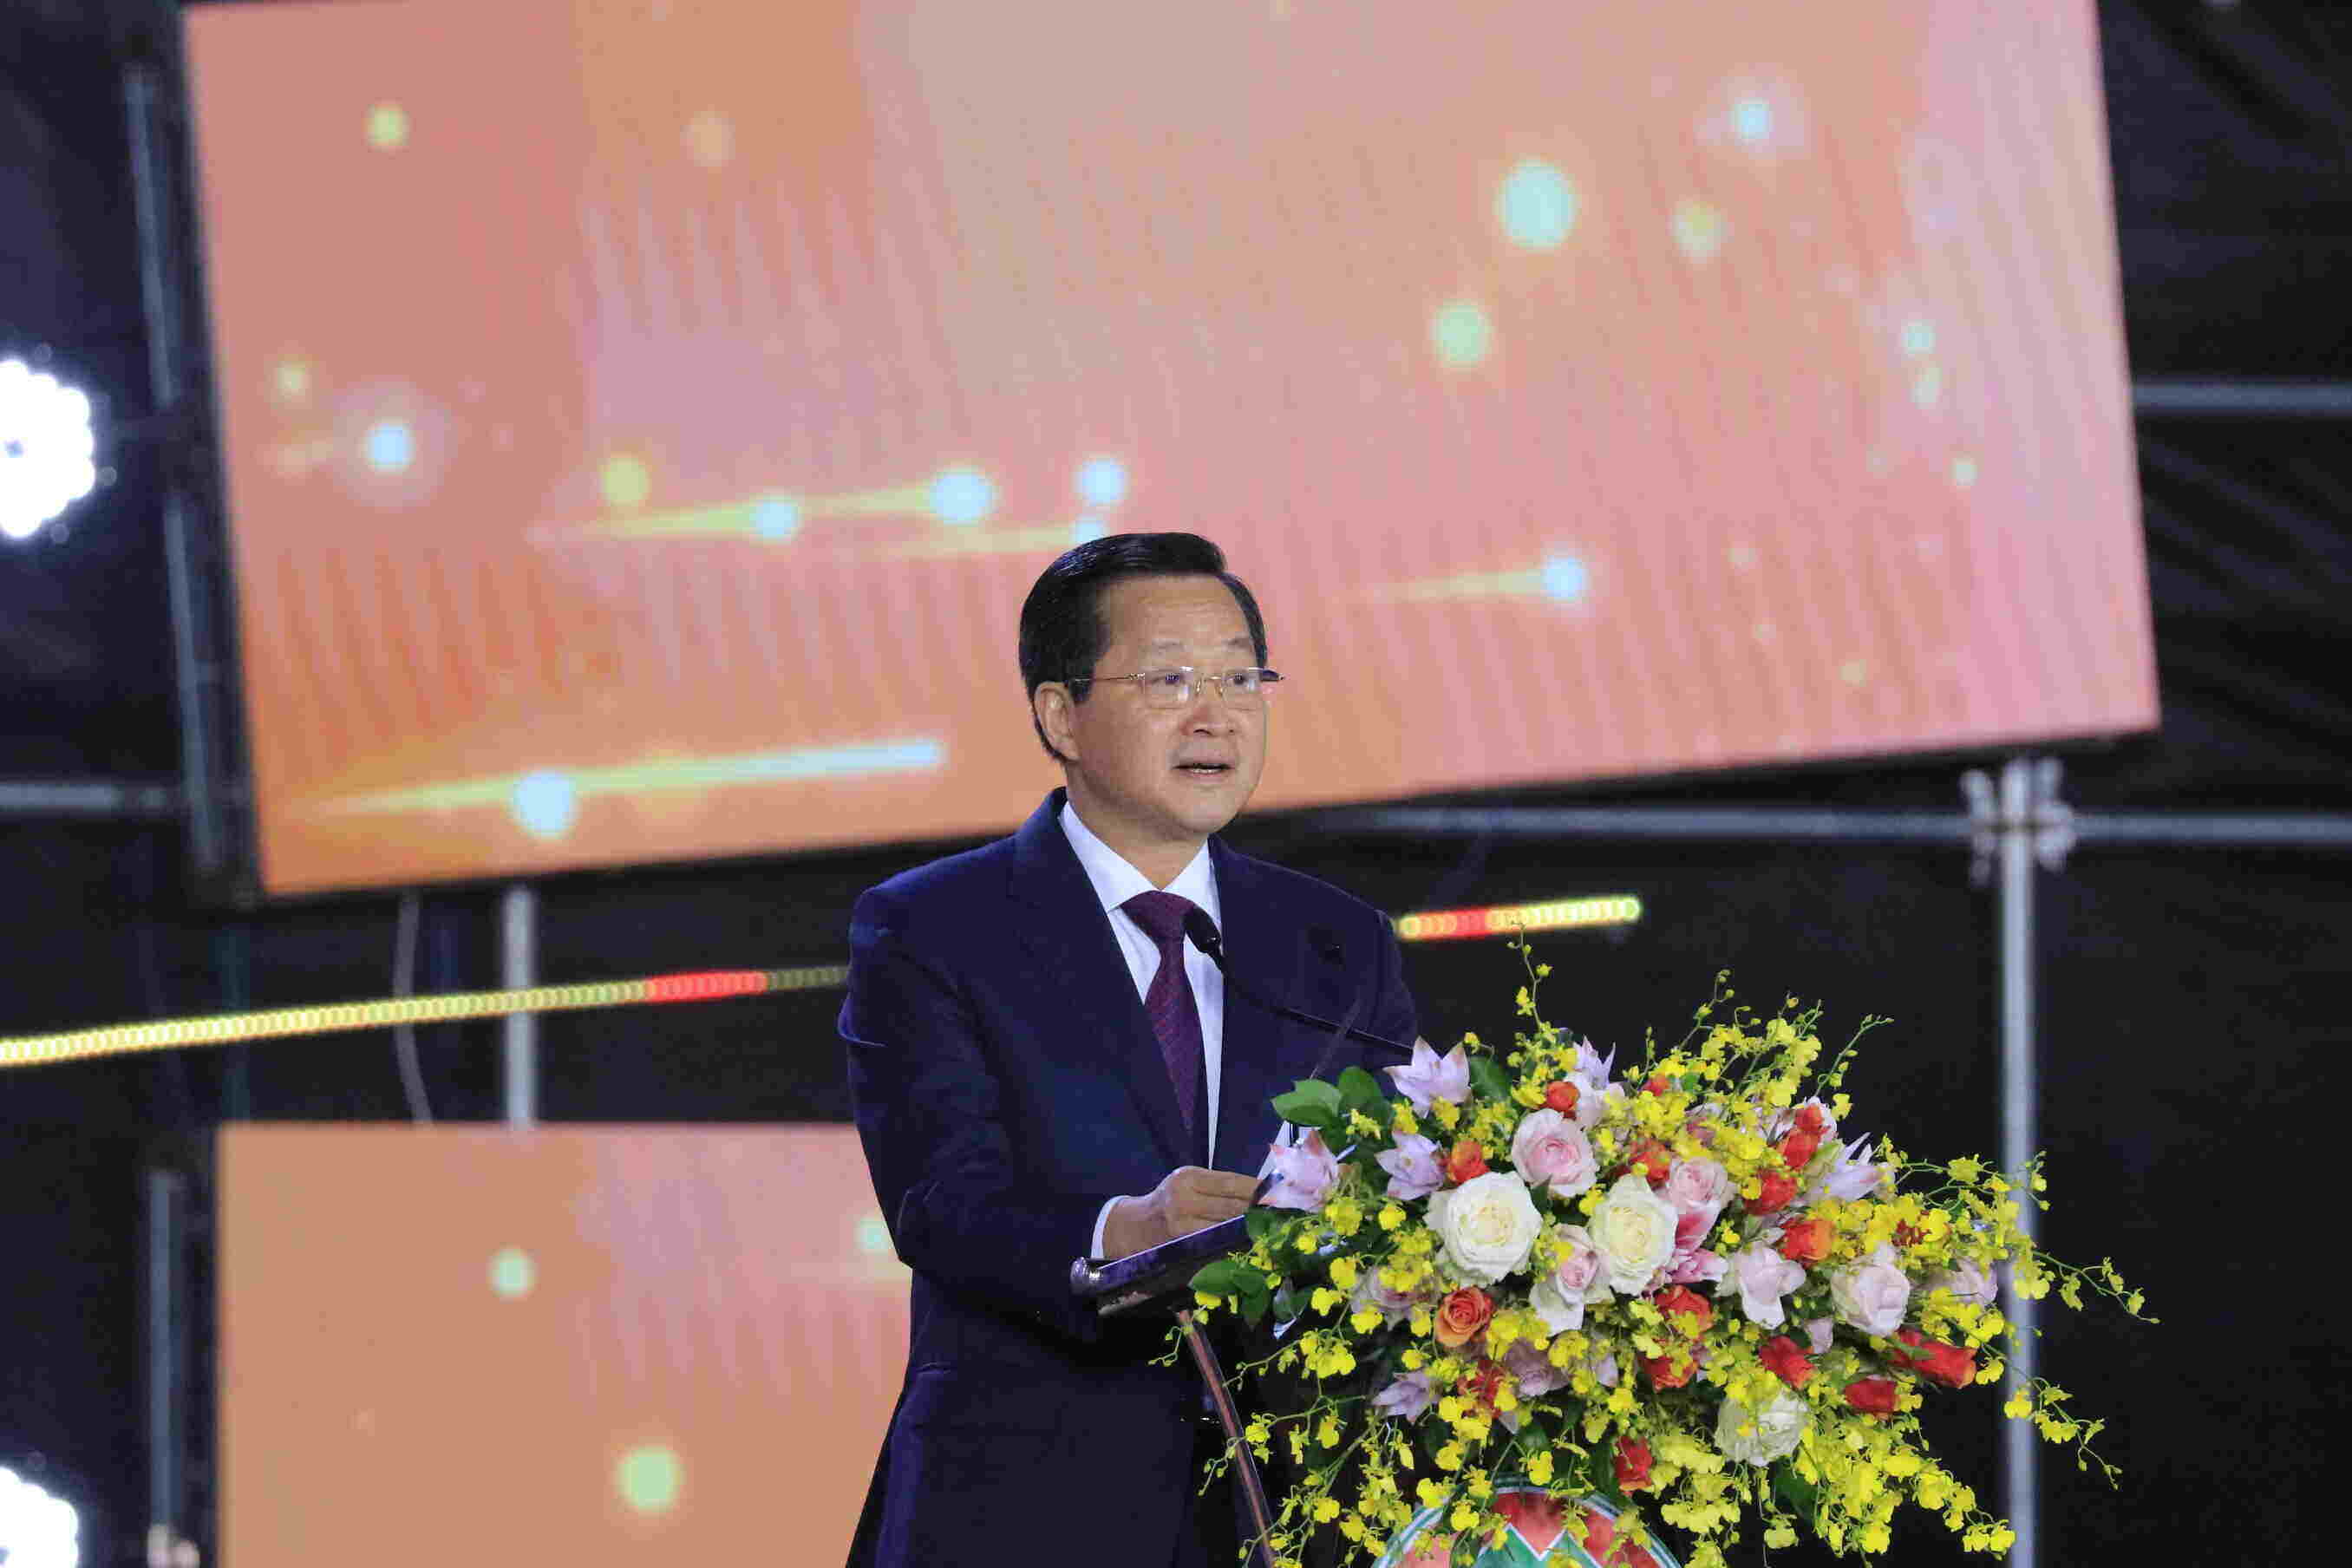 Phó Thủ tướng Lê Minh Khái chúc mừng lịch sử hào hùng và những thành tựu to lớn mà Đà Lạt đã đạt được. Ảnh: Mai Hương